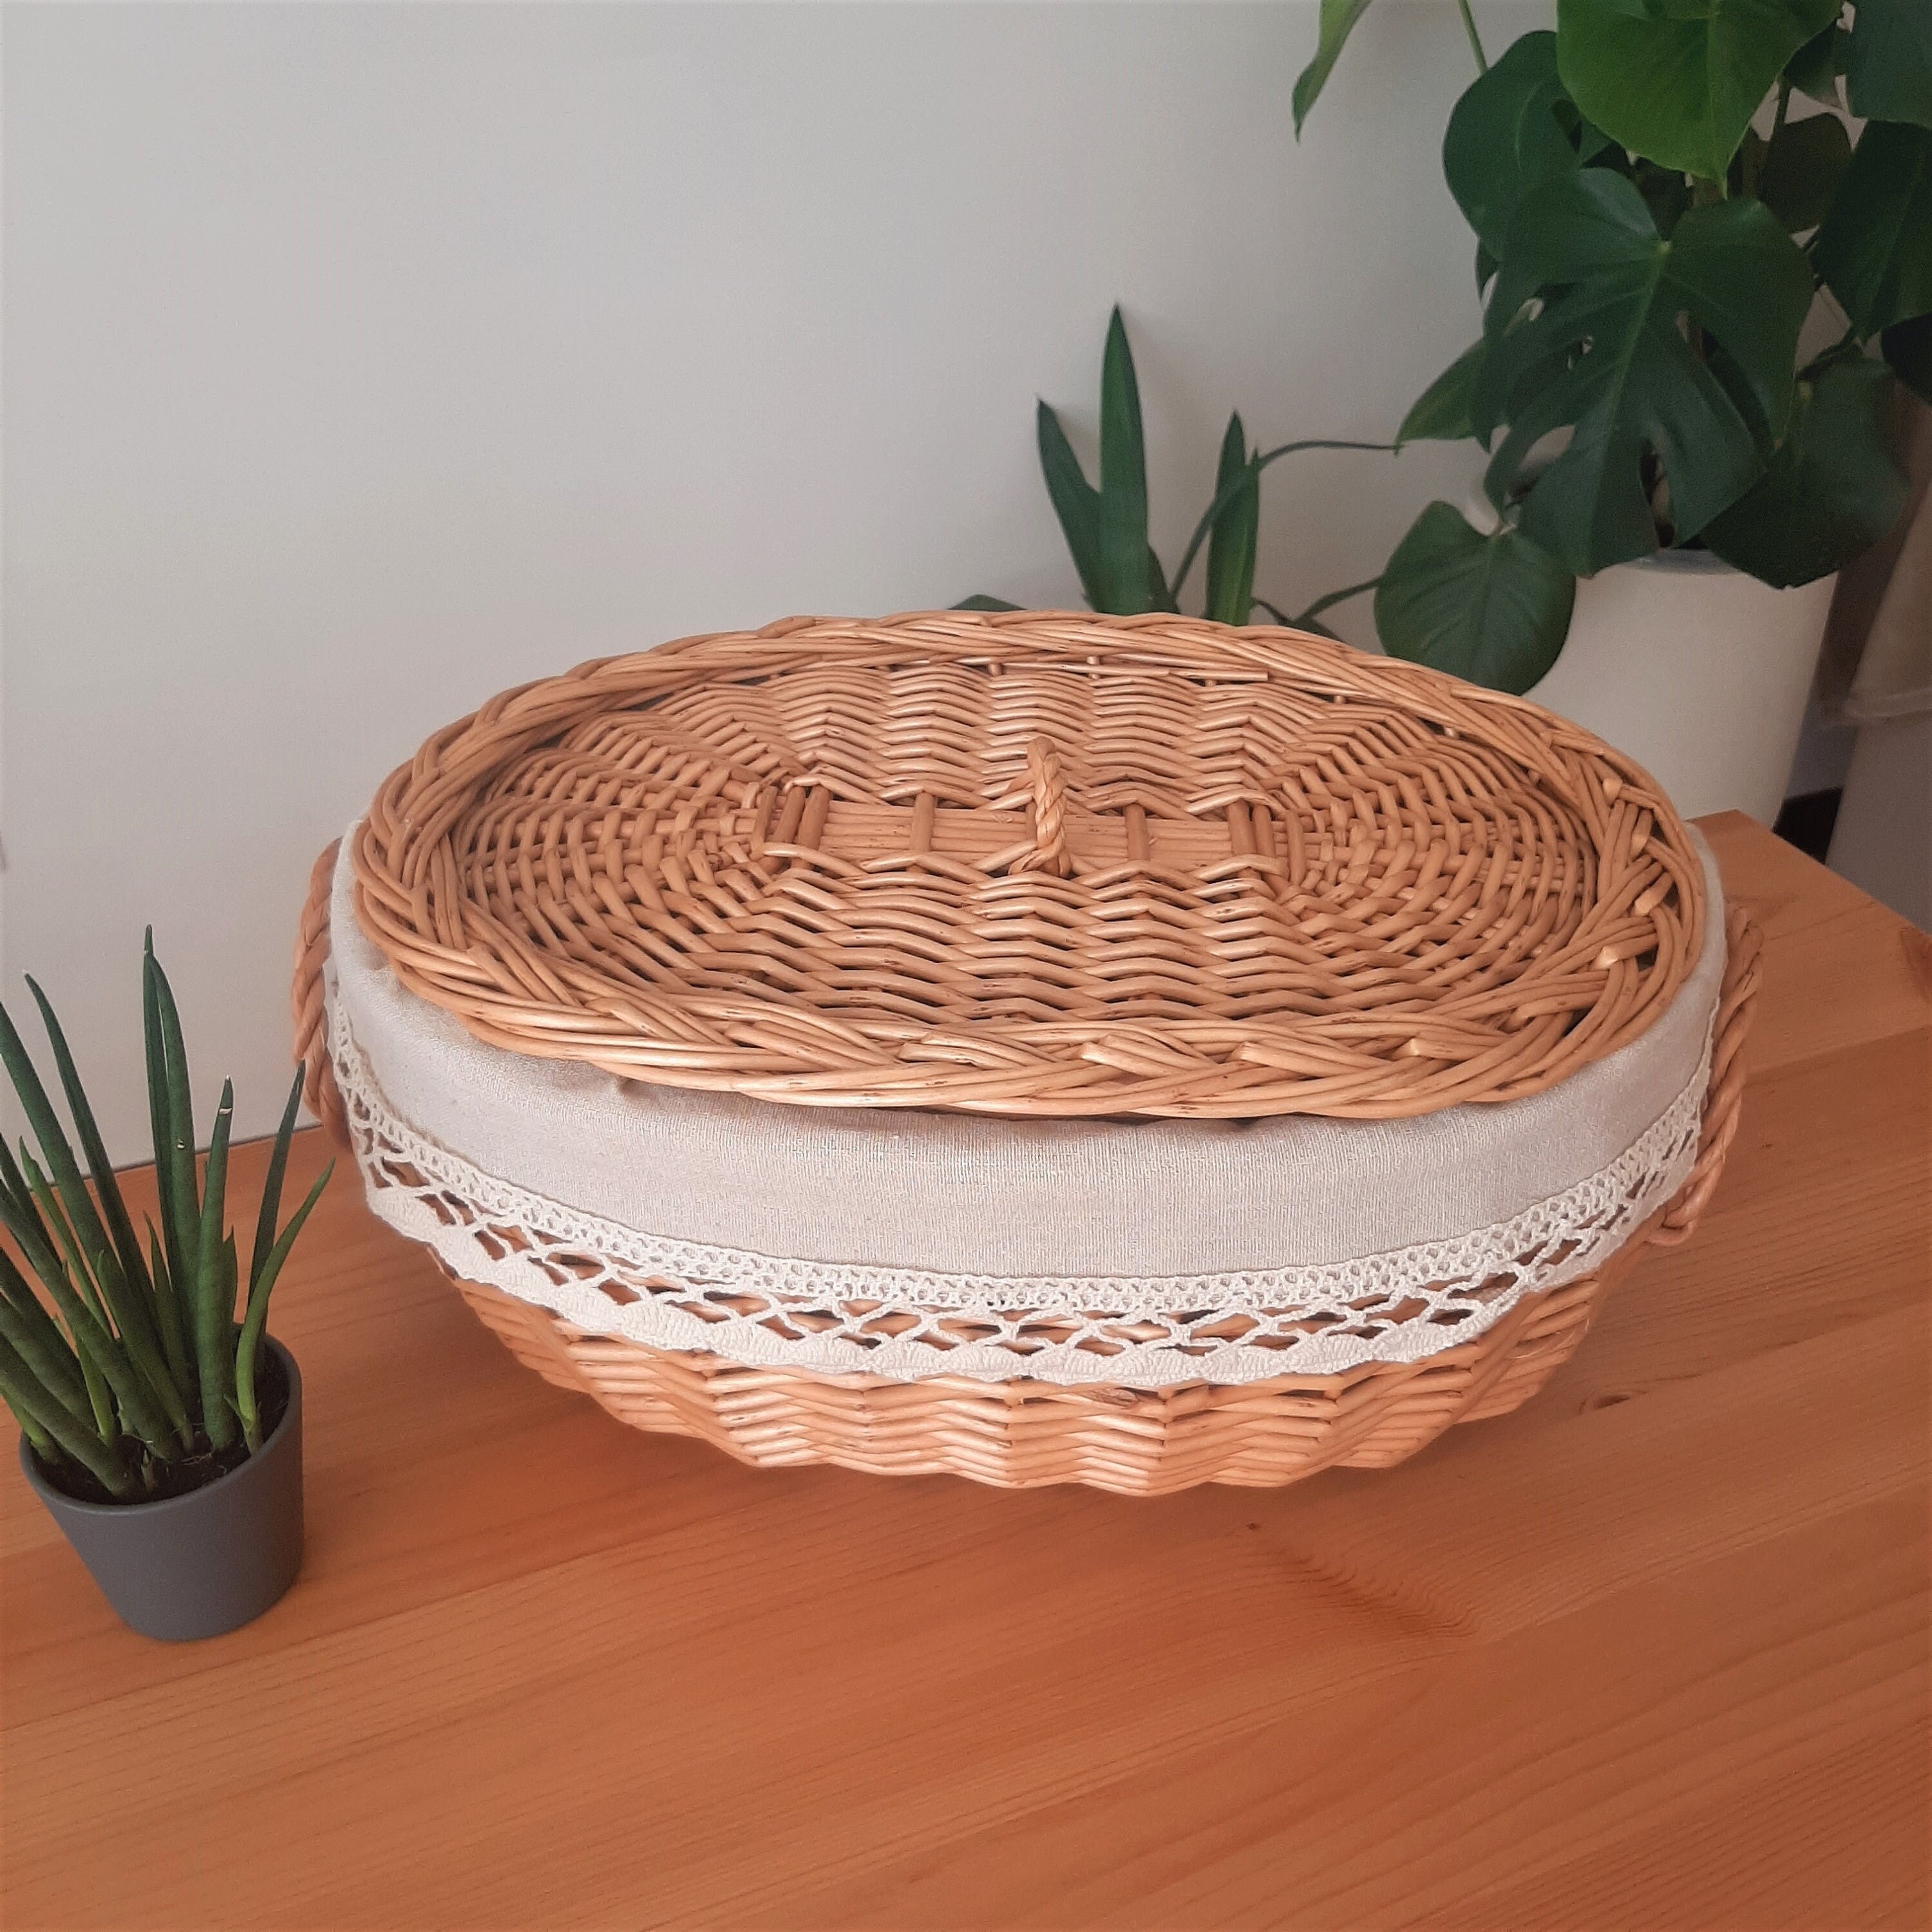 Handmade Bread Warmer & Wicker Basket - Lovebirds Oval Serving Accessories  by undefined